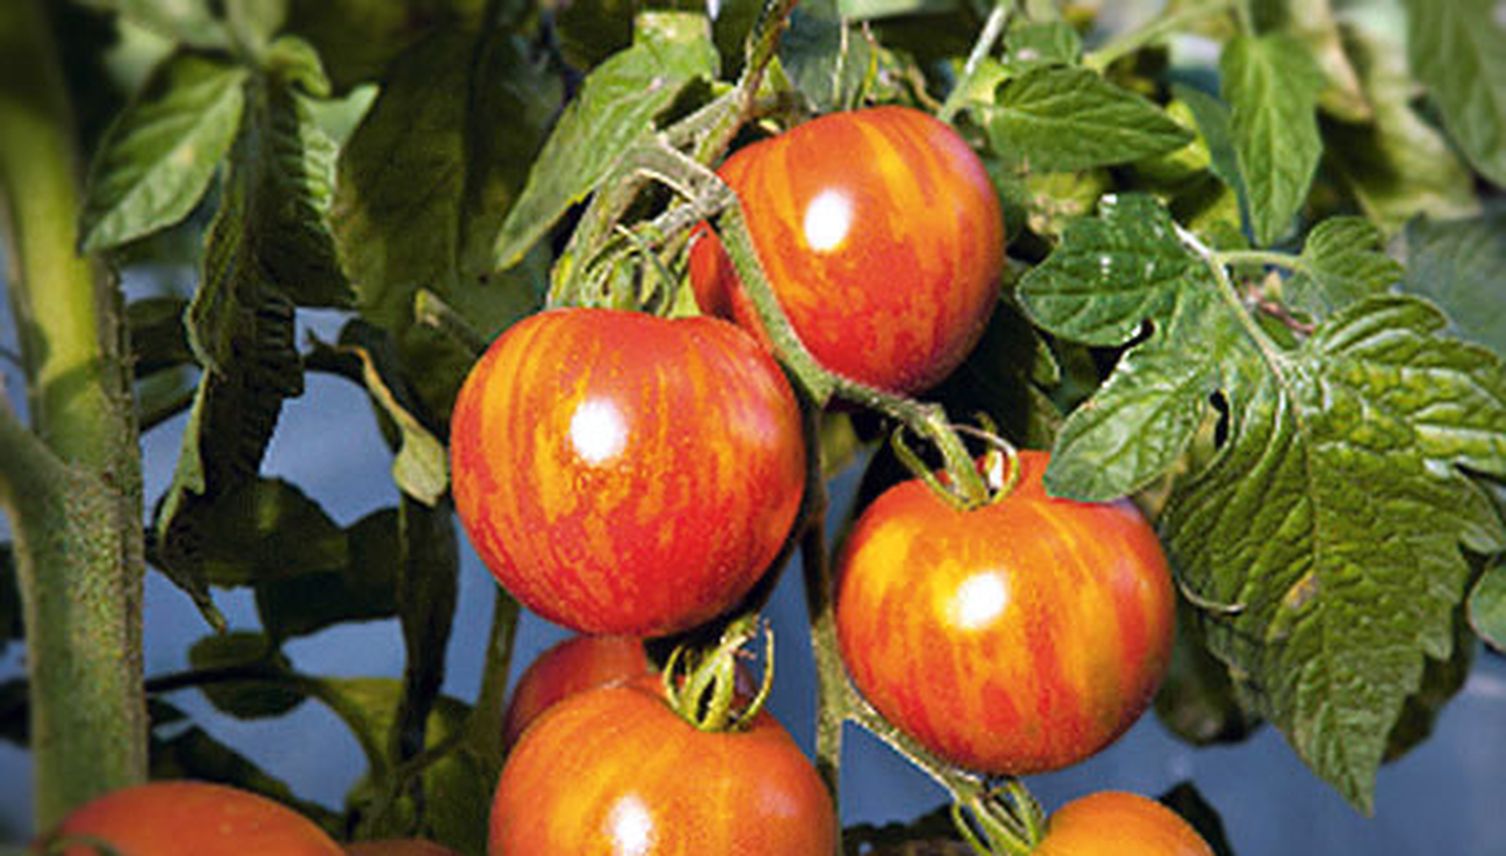 Freie Tomaten für alle!